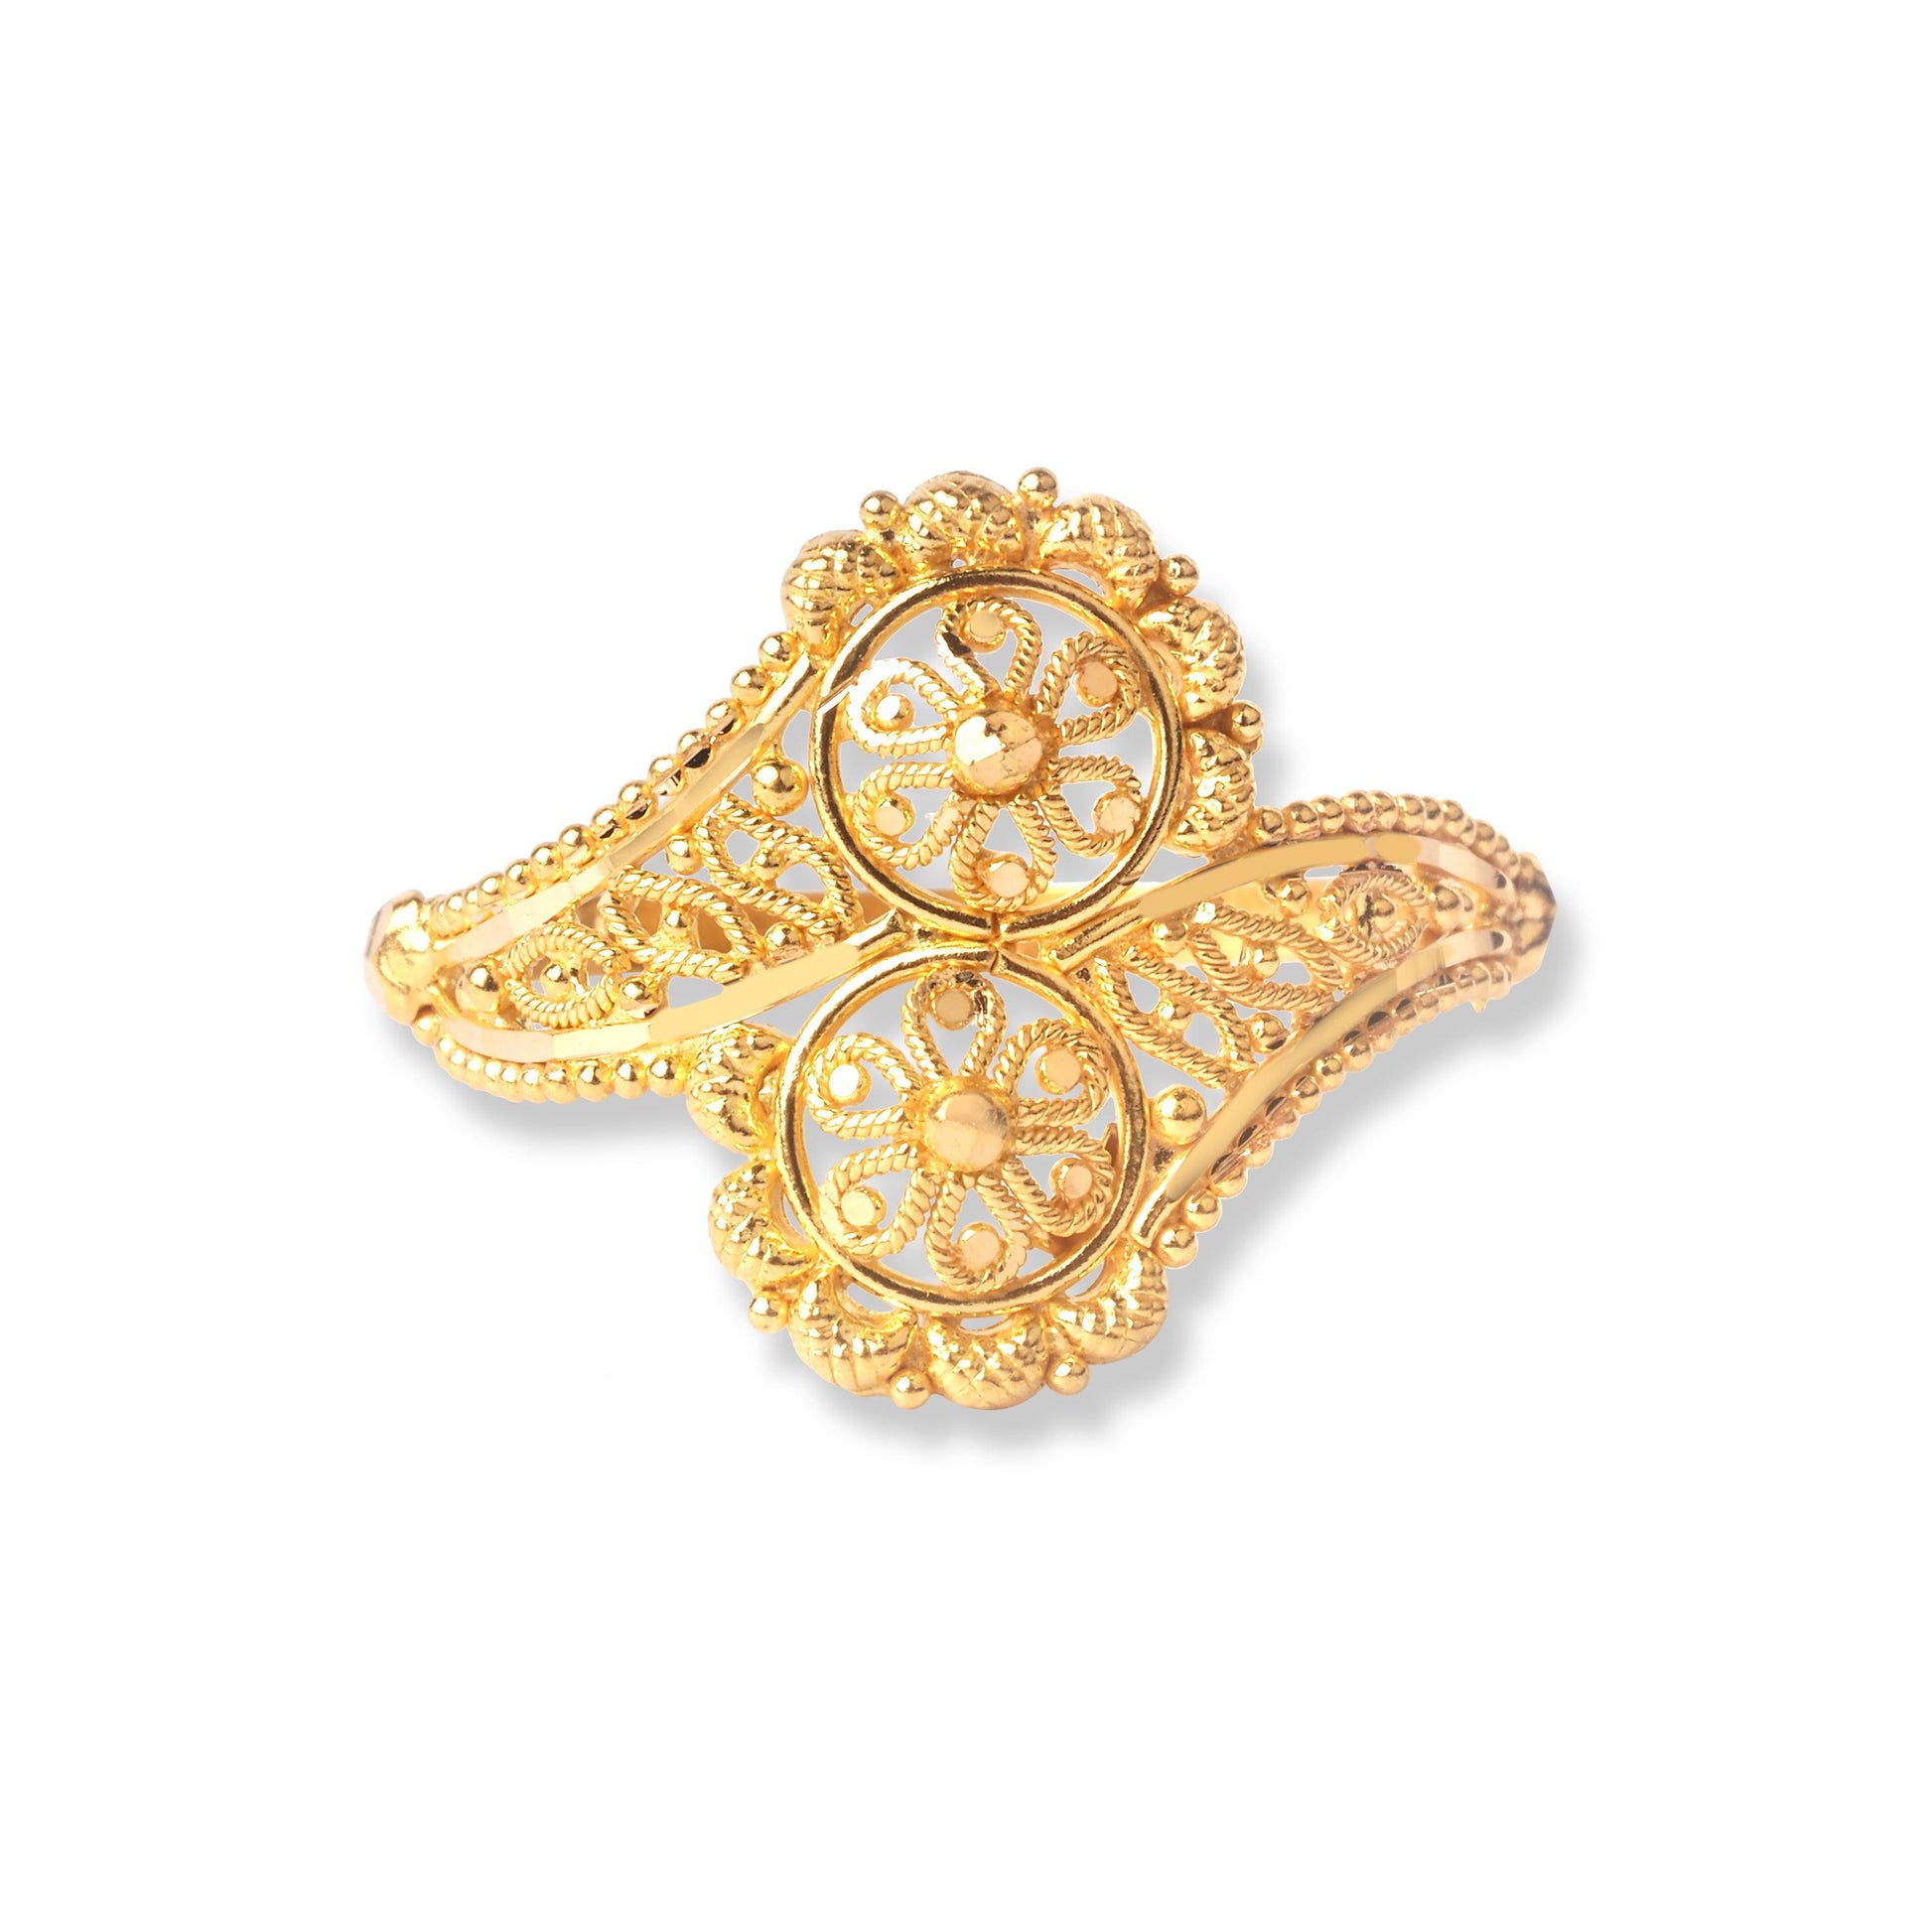 22ct Gold Filigree Ring (2.8g) LR-6568 - Minar Jewellers